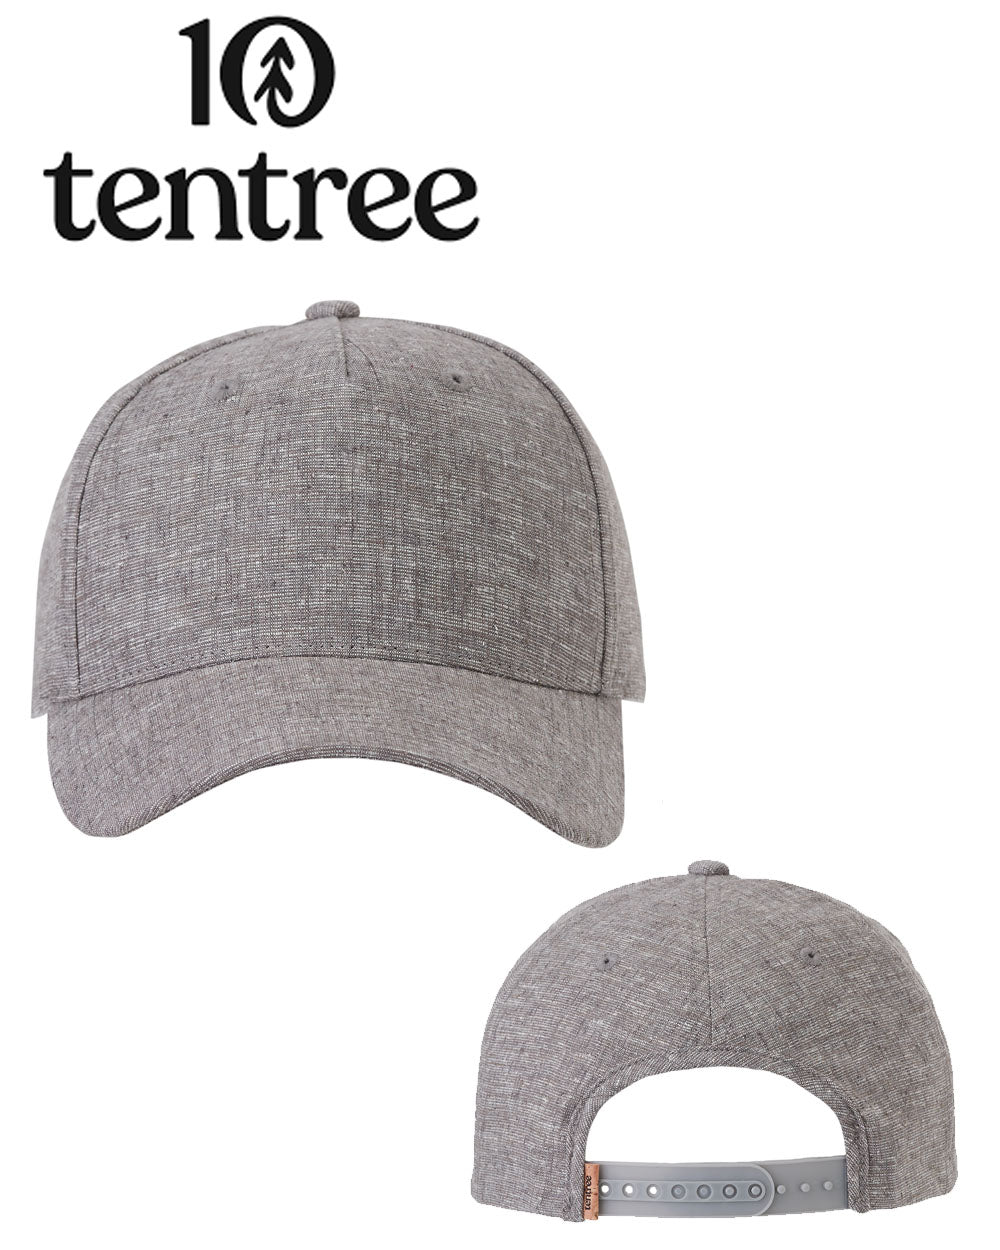 Ten Tree Hemp Snapback Hat